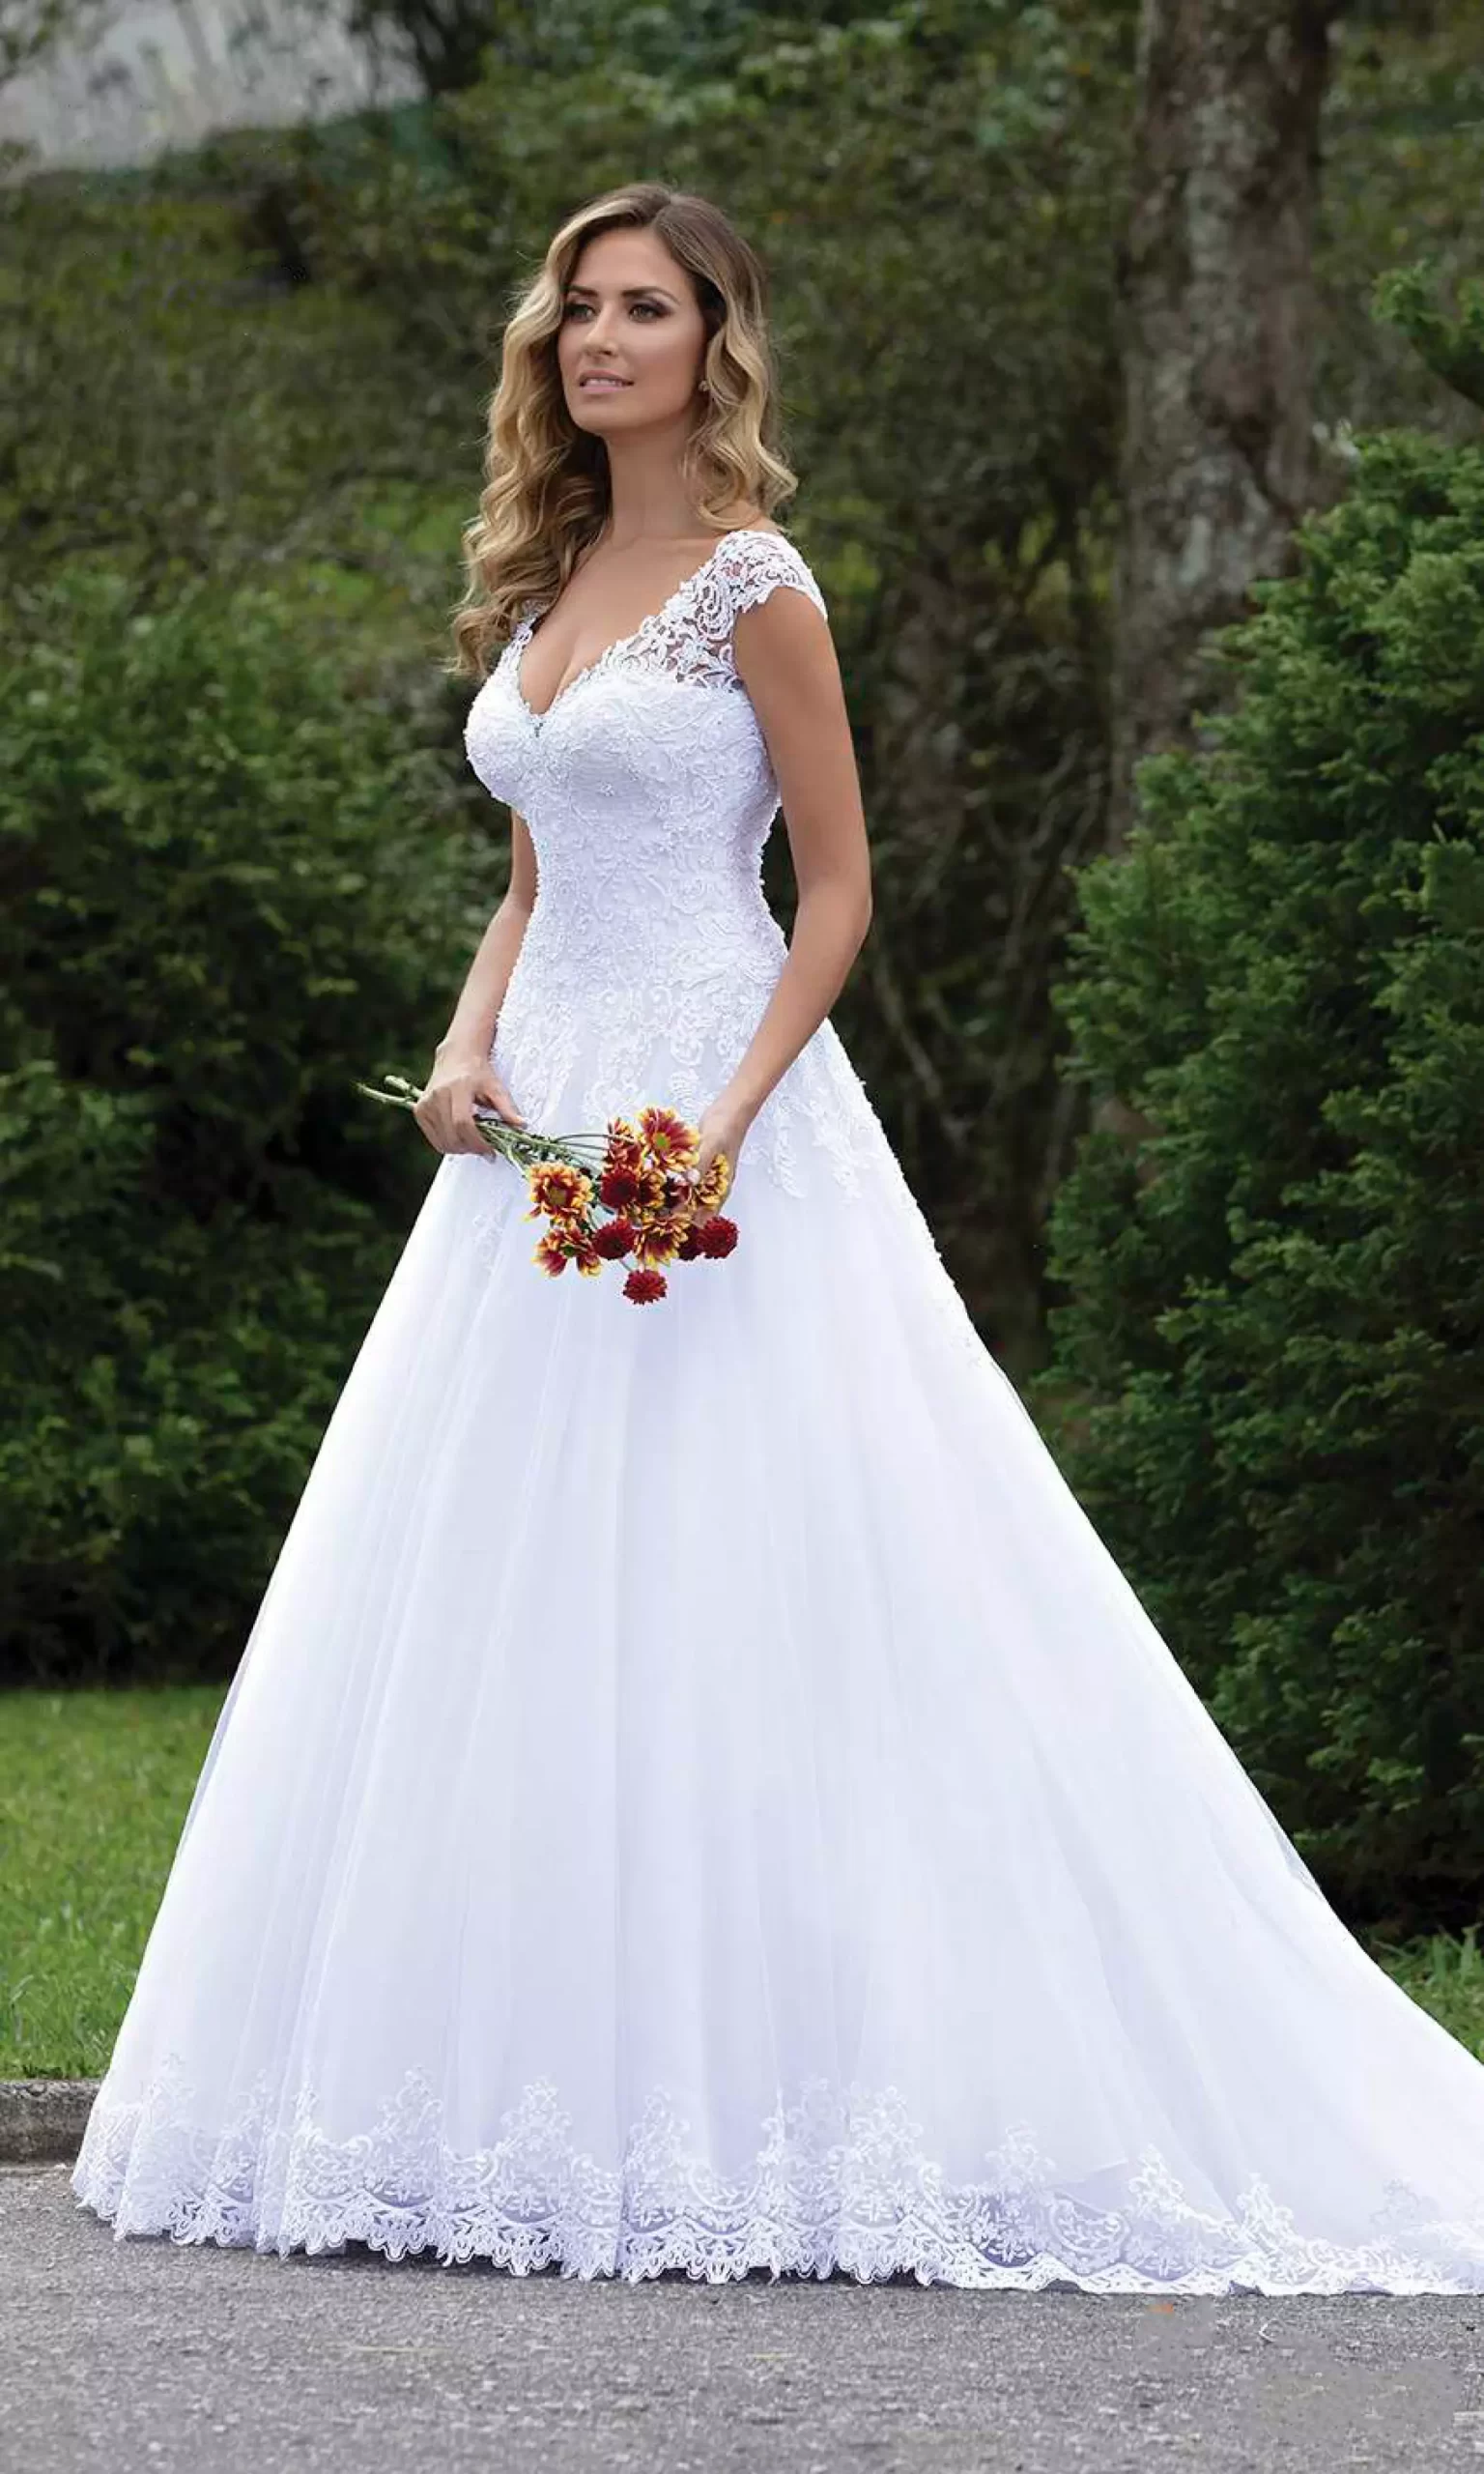 Mulher vestido um vestido de noiva branco evasê. Ela segura um buquê de flores com as mãos.